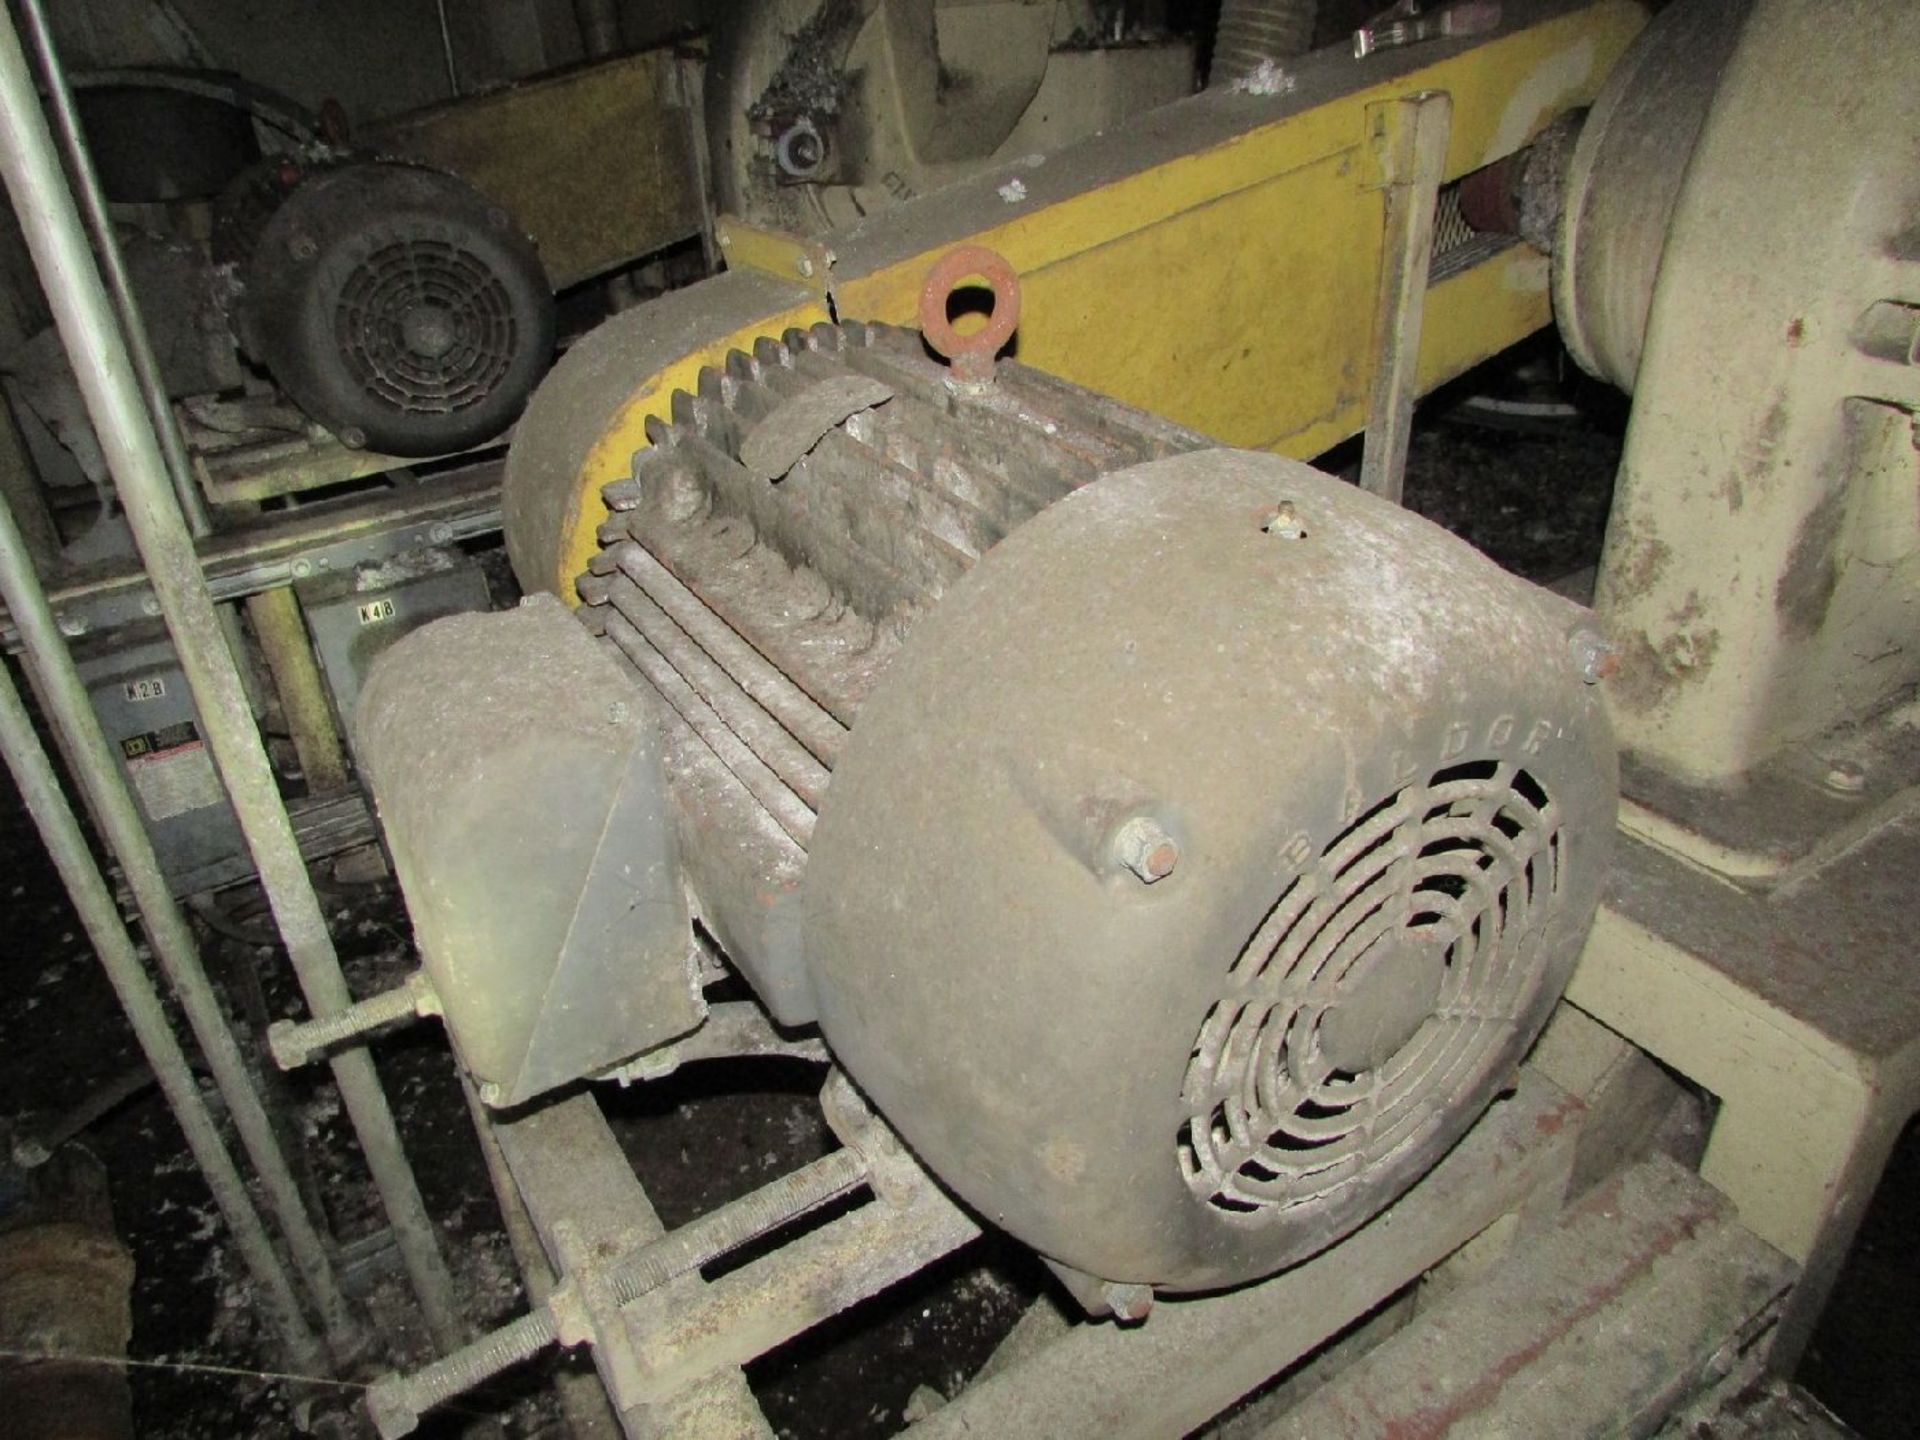 Italo Danioni-Milano Model 524 Pin Mill (Processing) - Image 4 of 7